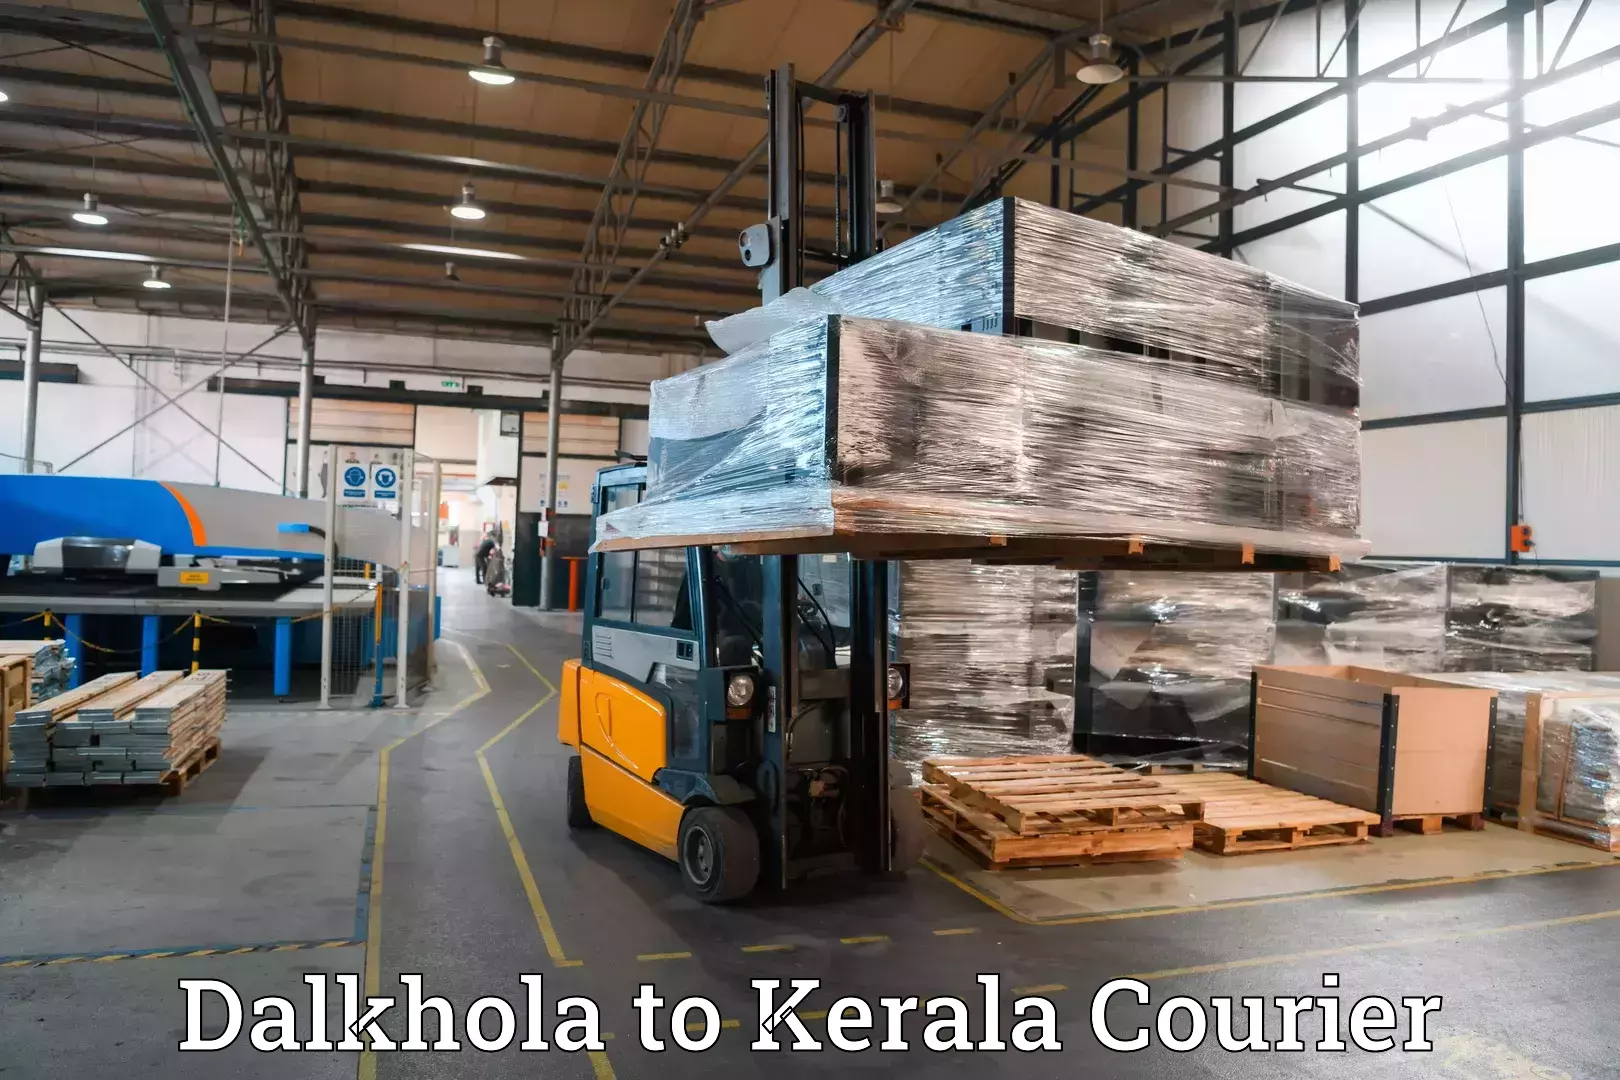 Door-to-door baggage service Dalkhola to Kerala